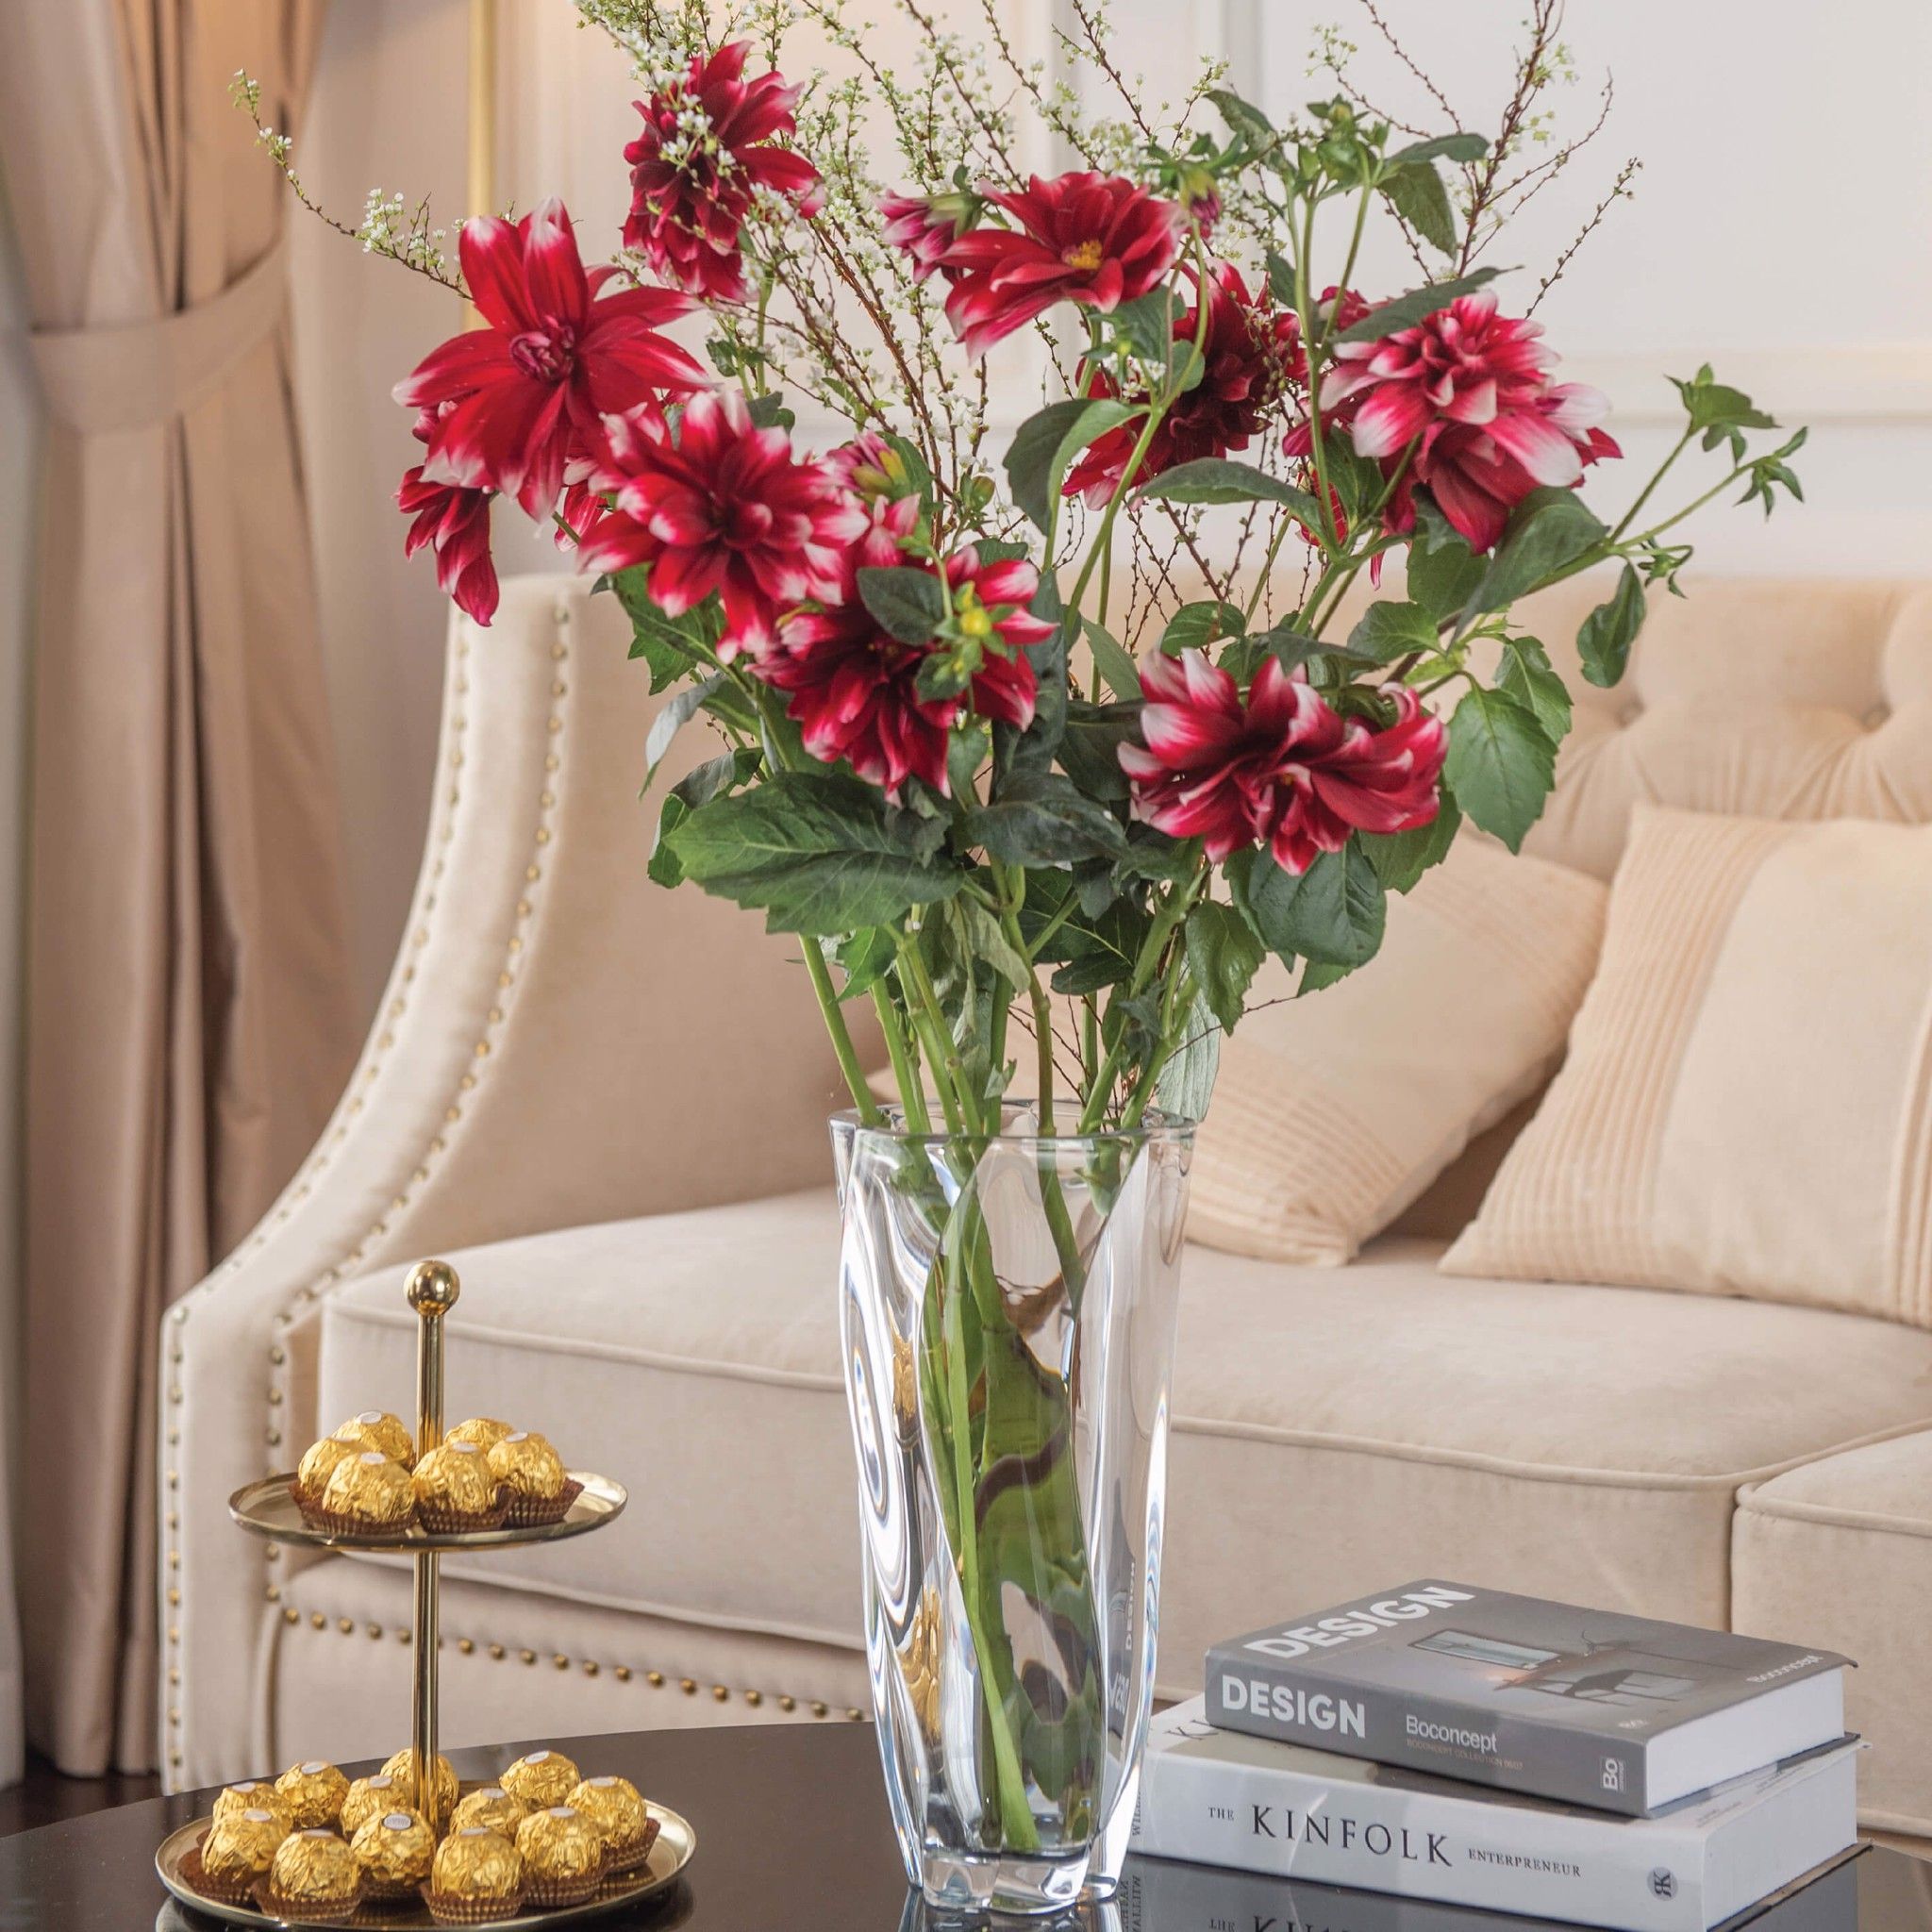 Cập nhật không gian sống của bạn bằng một chiếc lọ hoa phòng khách đẹp tinh tế. Sử dụng các loại hoa tươi để bổ sung cho không gian sống của bạn, tạo ra một cảm giác ấm cúng và dễ chịu.